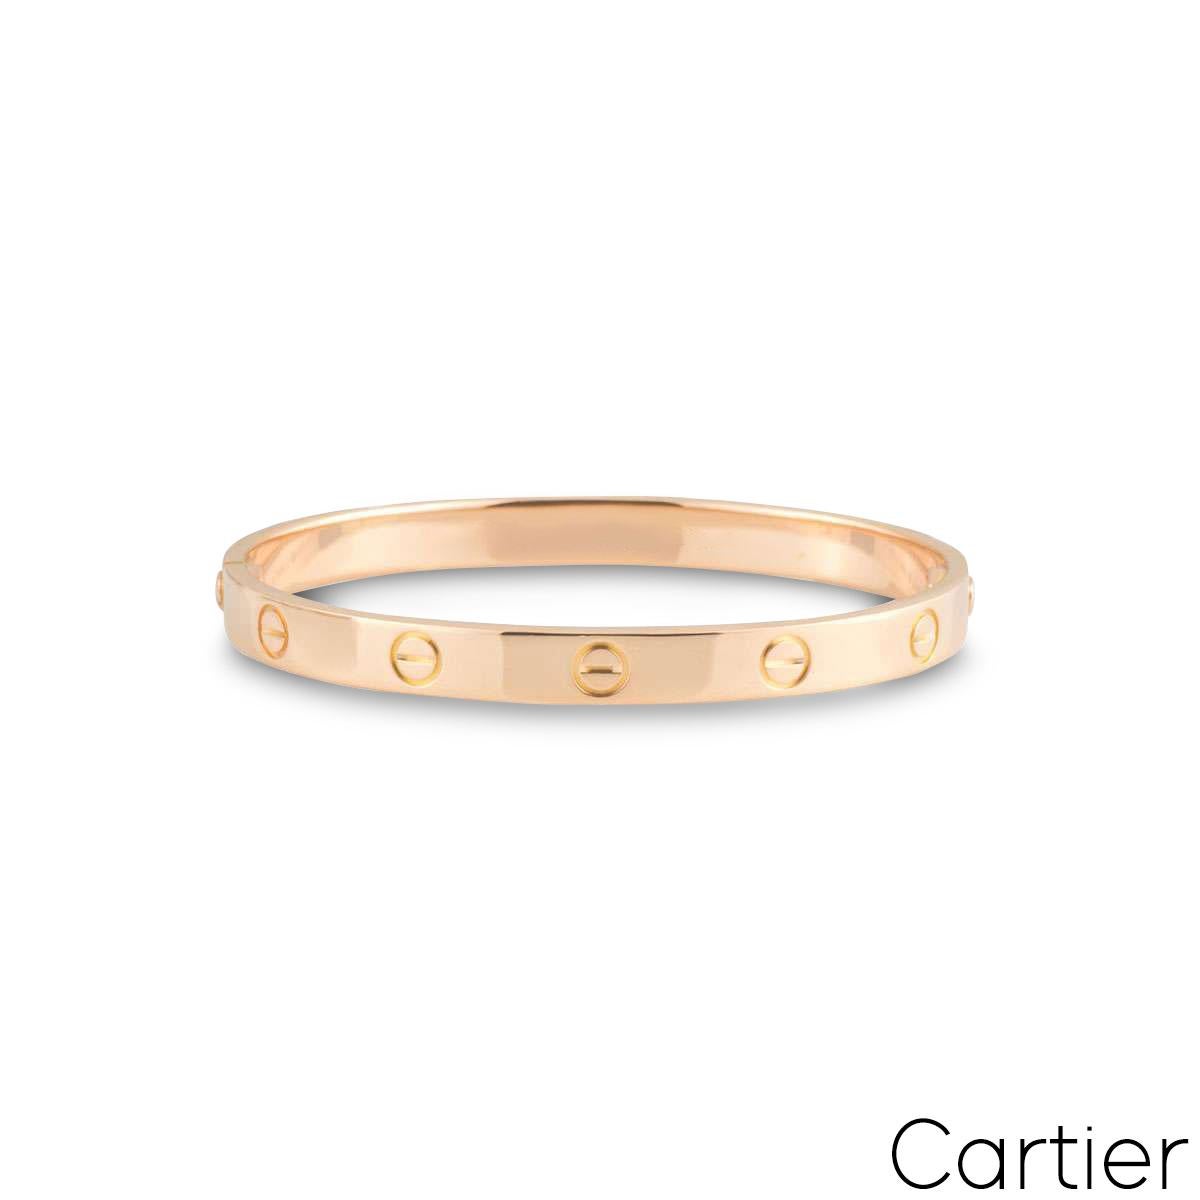 Ein Cartier Armband aus 18 Karat Roségold aus der Collection'S Love. Das Armband ist mit dem ikonischen Schraubenmotiv an der Außenseite des Armbands versehen und verfügt über eine neuartige Verschraubung. Das Armband hat die Größe 16 und ein